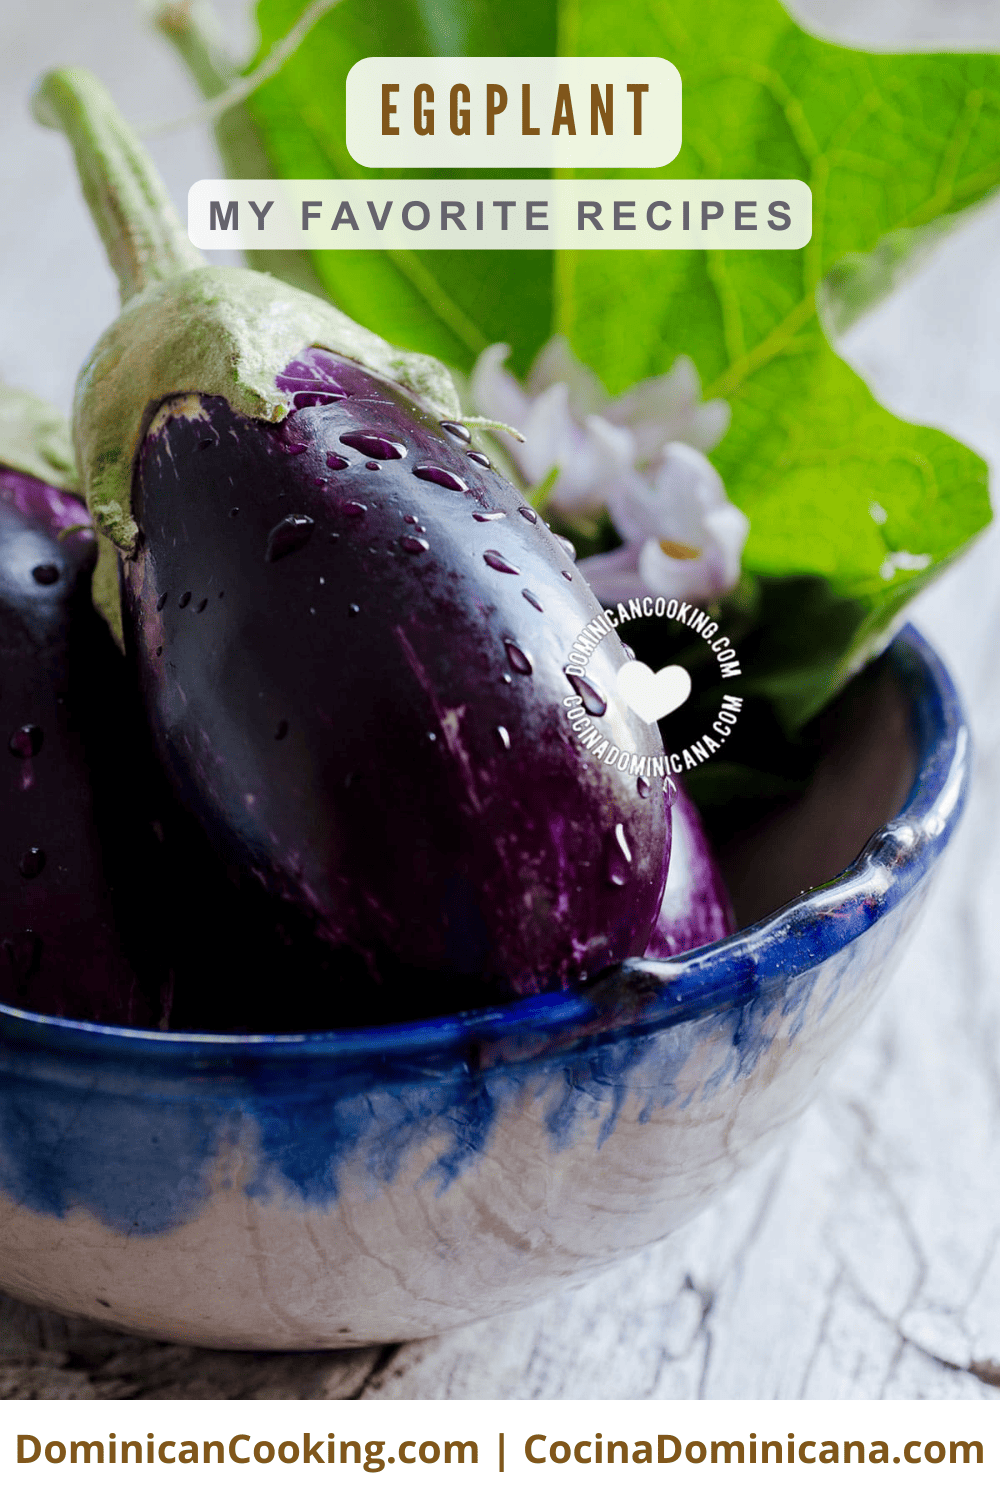 Eggplant recipes.